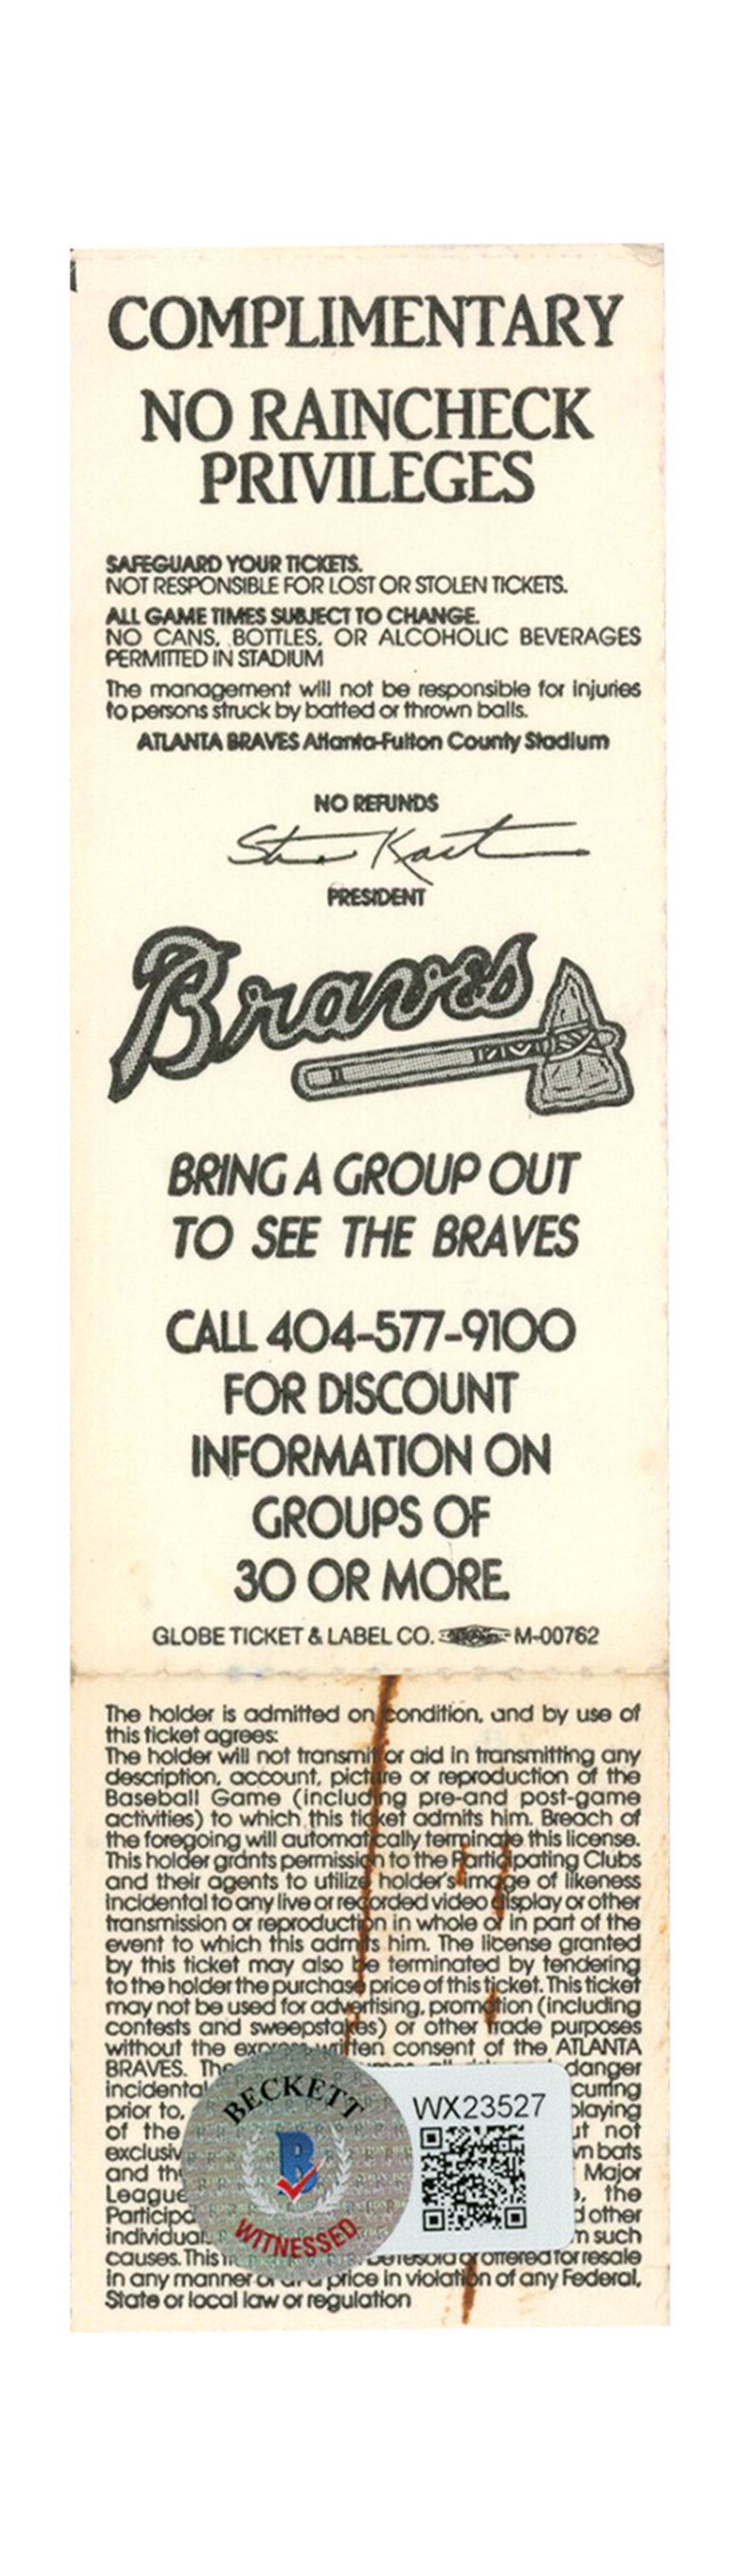 Deion Sanders Signed Atlanta Braves 7/15/1991 vs Cubs Full Ticket BAS